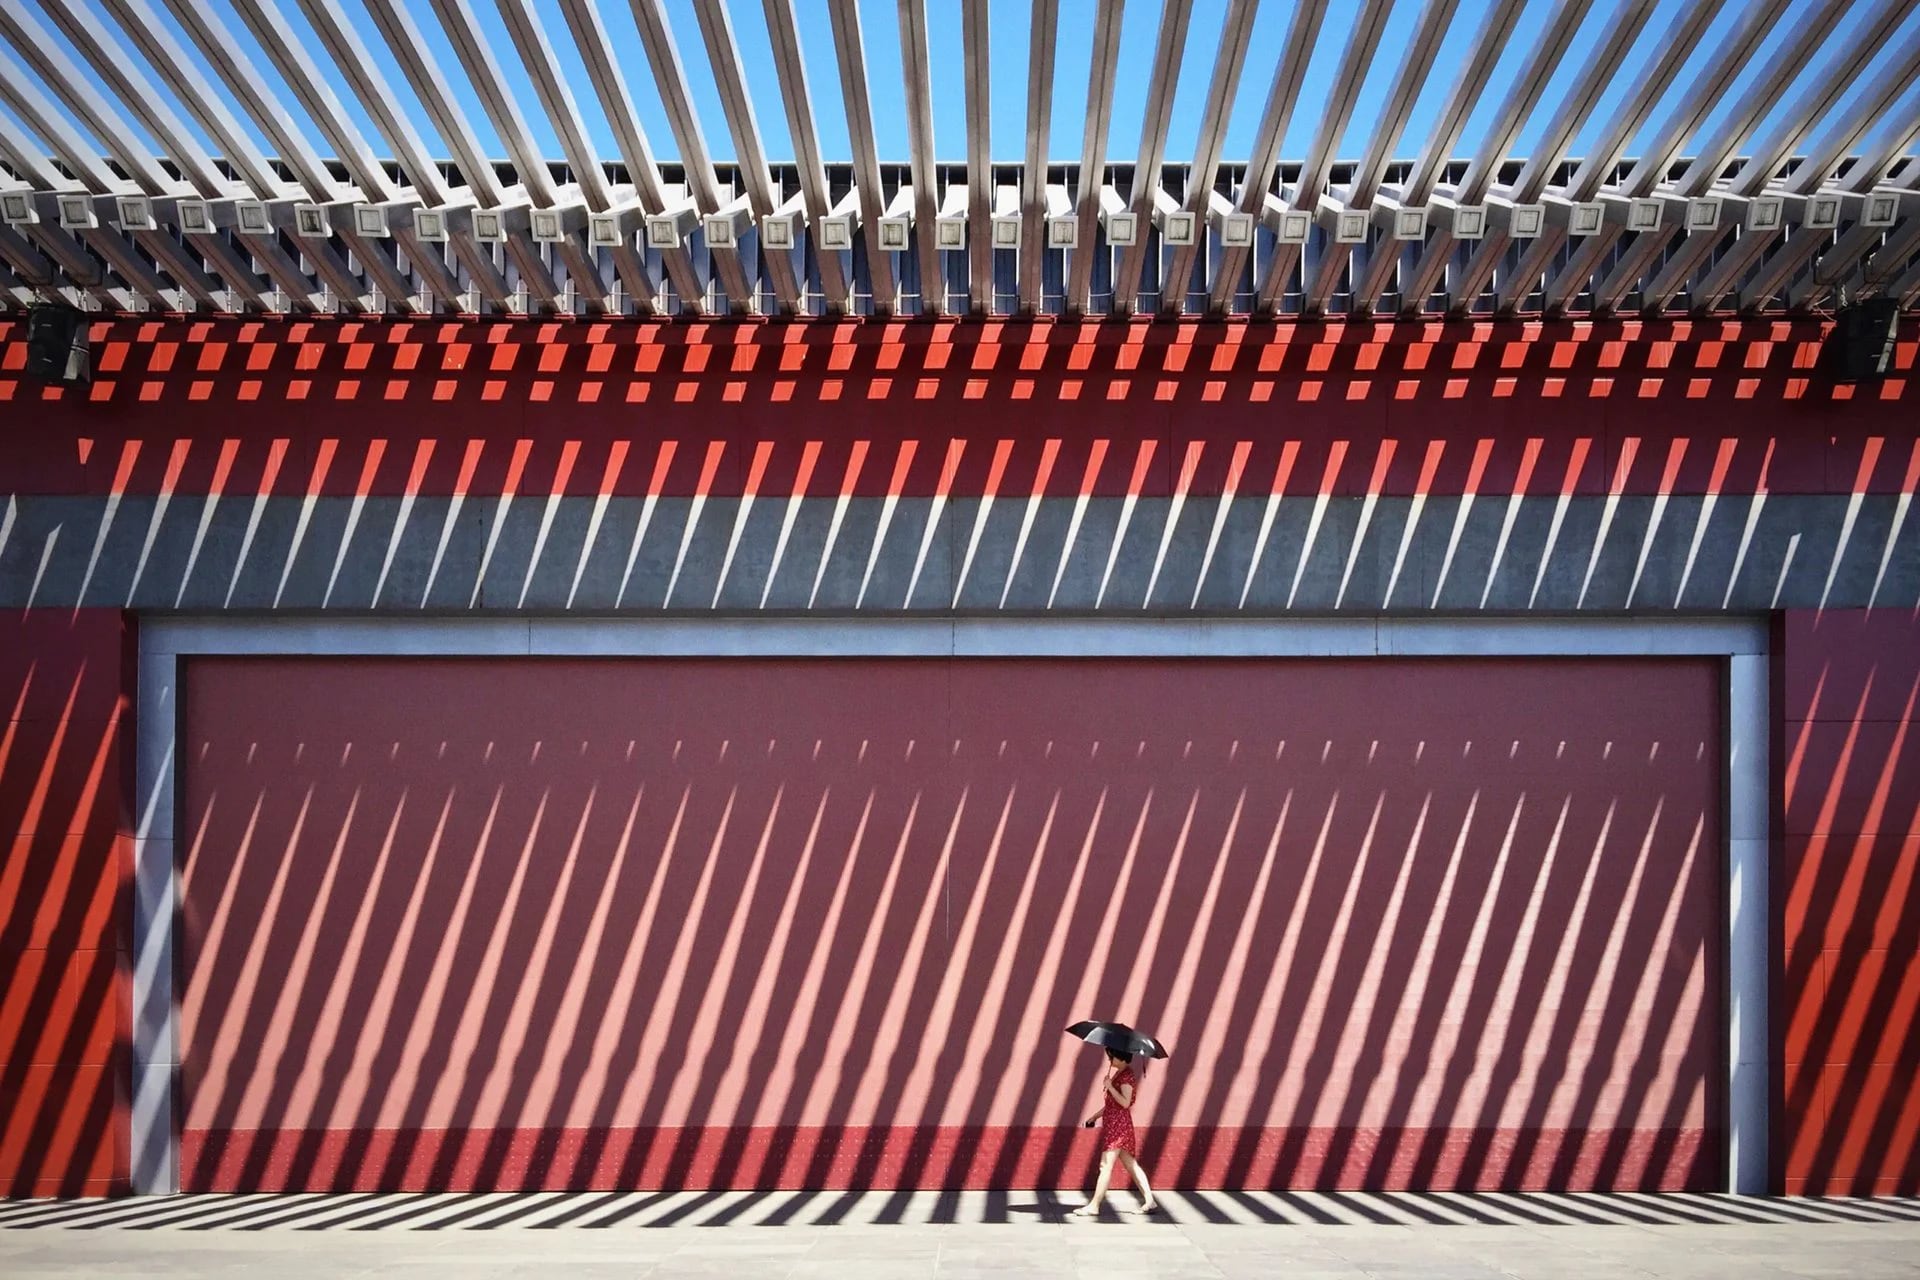 El premio de Arquitectura fue para Wang Jian de Beijing, China, por su fotografía tomada en el Parque Olímpico (Jian Wang)